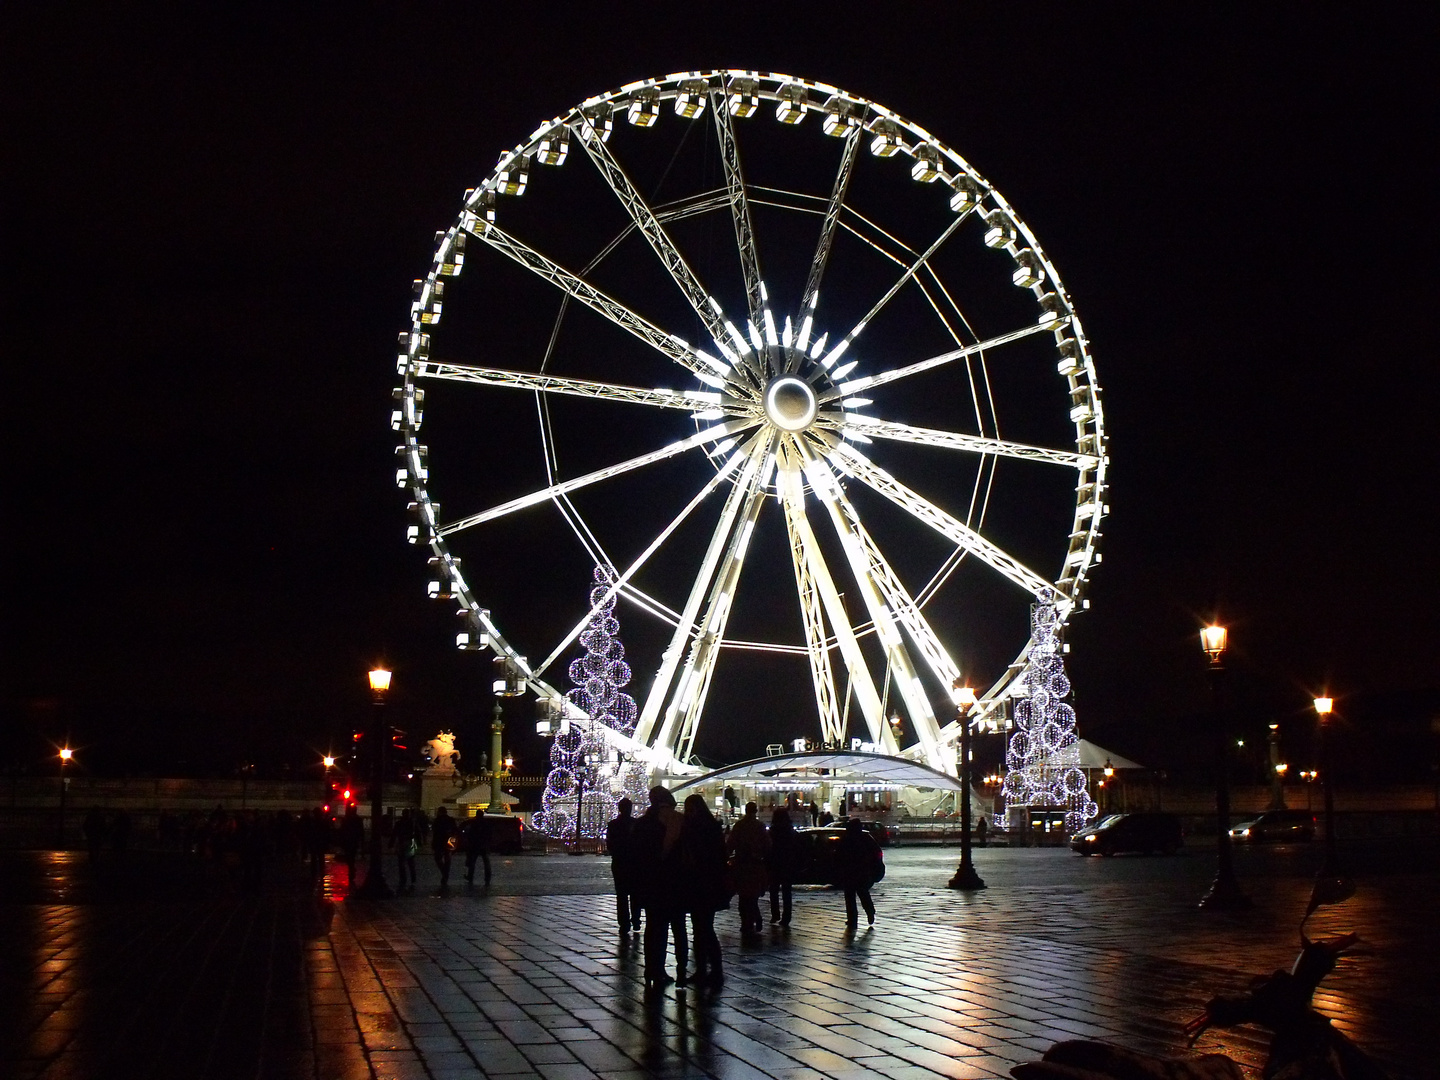 Das Riesenrad am Place de la Concorde